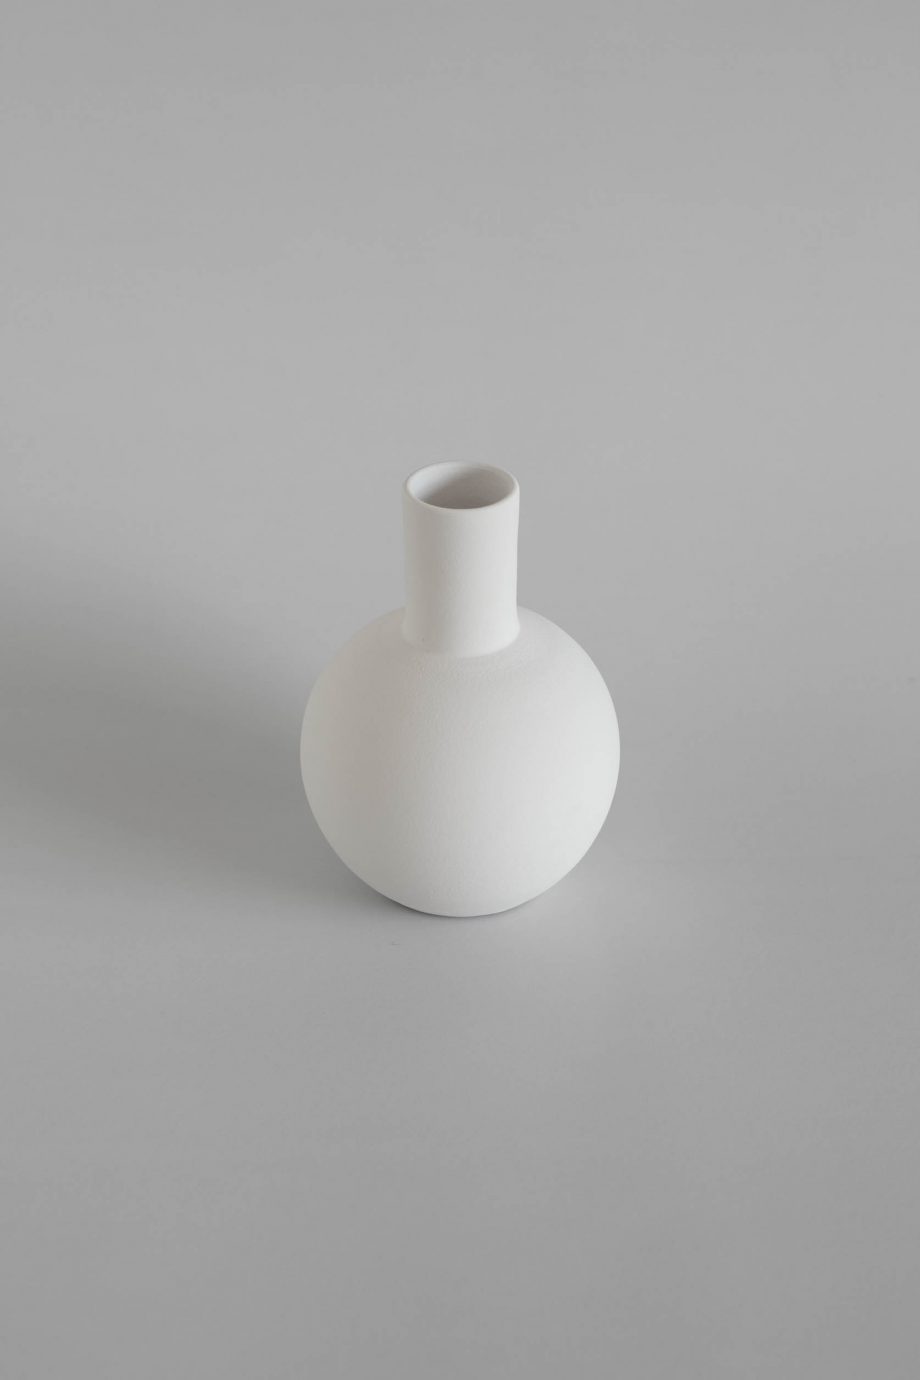 White decorative vase from the Portuguese home decor brand o cactuu.